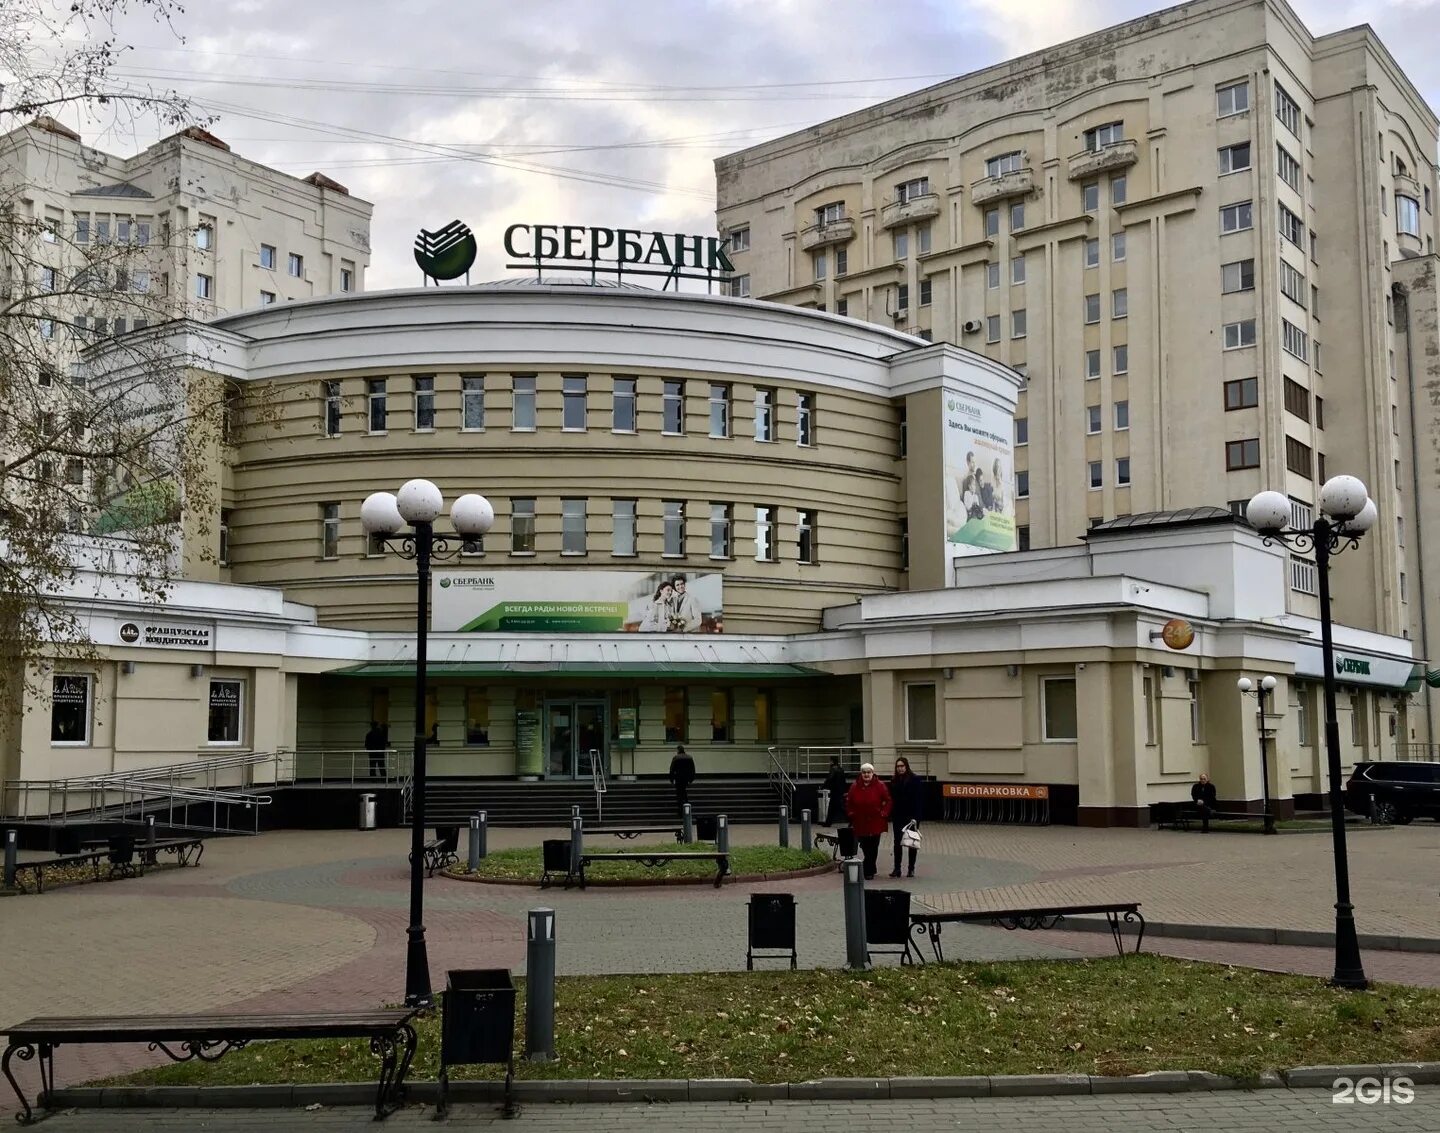 Сбербанк пр т. Сбербанк на проспекте Ленина во Владимире.